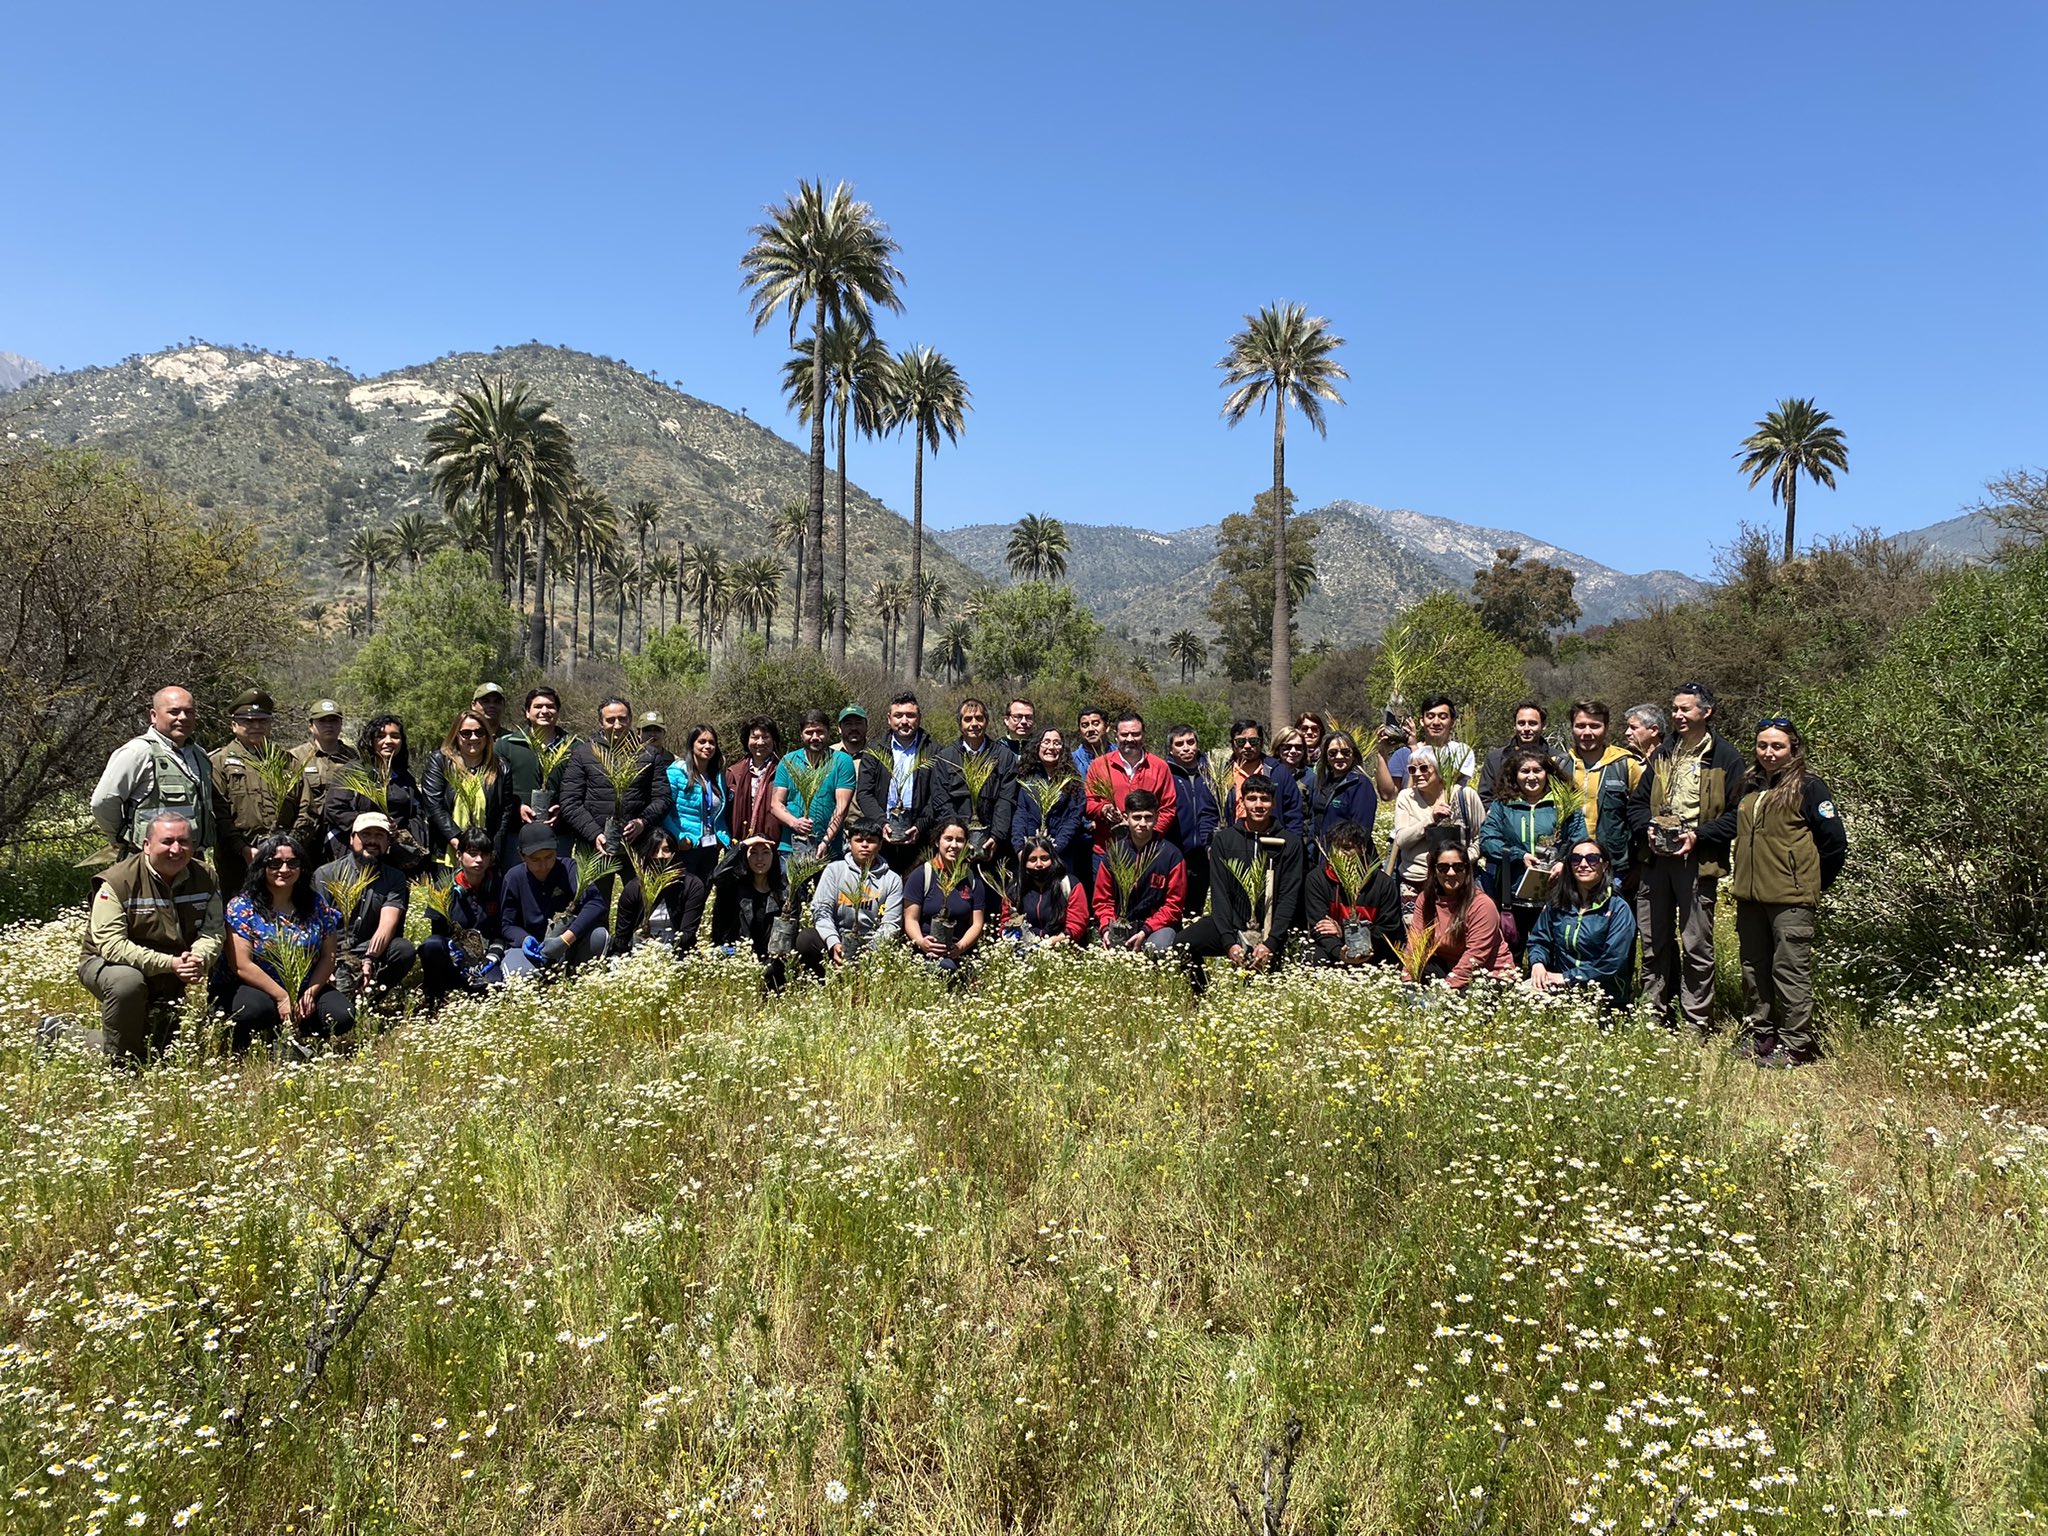 Vecinos y estudiantes plantan palmas chilenas en Ocoa